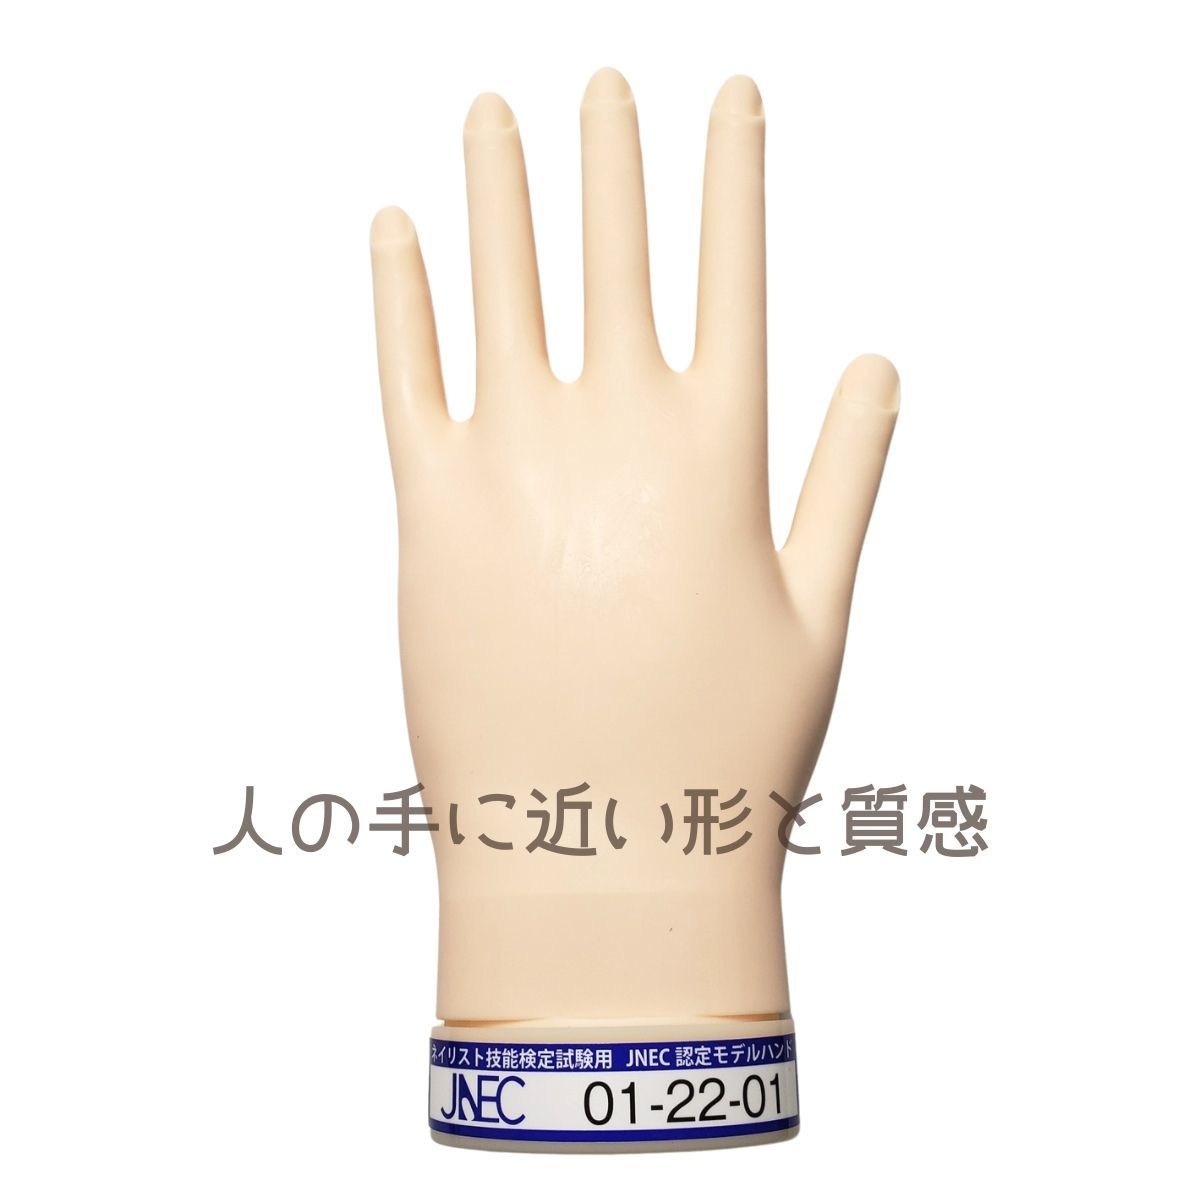 JNEC одобрено . река ST модель рука левый рука искусственные ногти имеется no. 1 период JNEC одобрено модель рука 01-22-01nei список . талант сертификация экзамен taki сторона ногти 